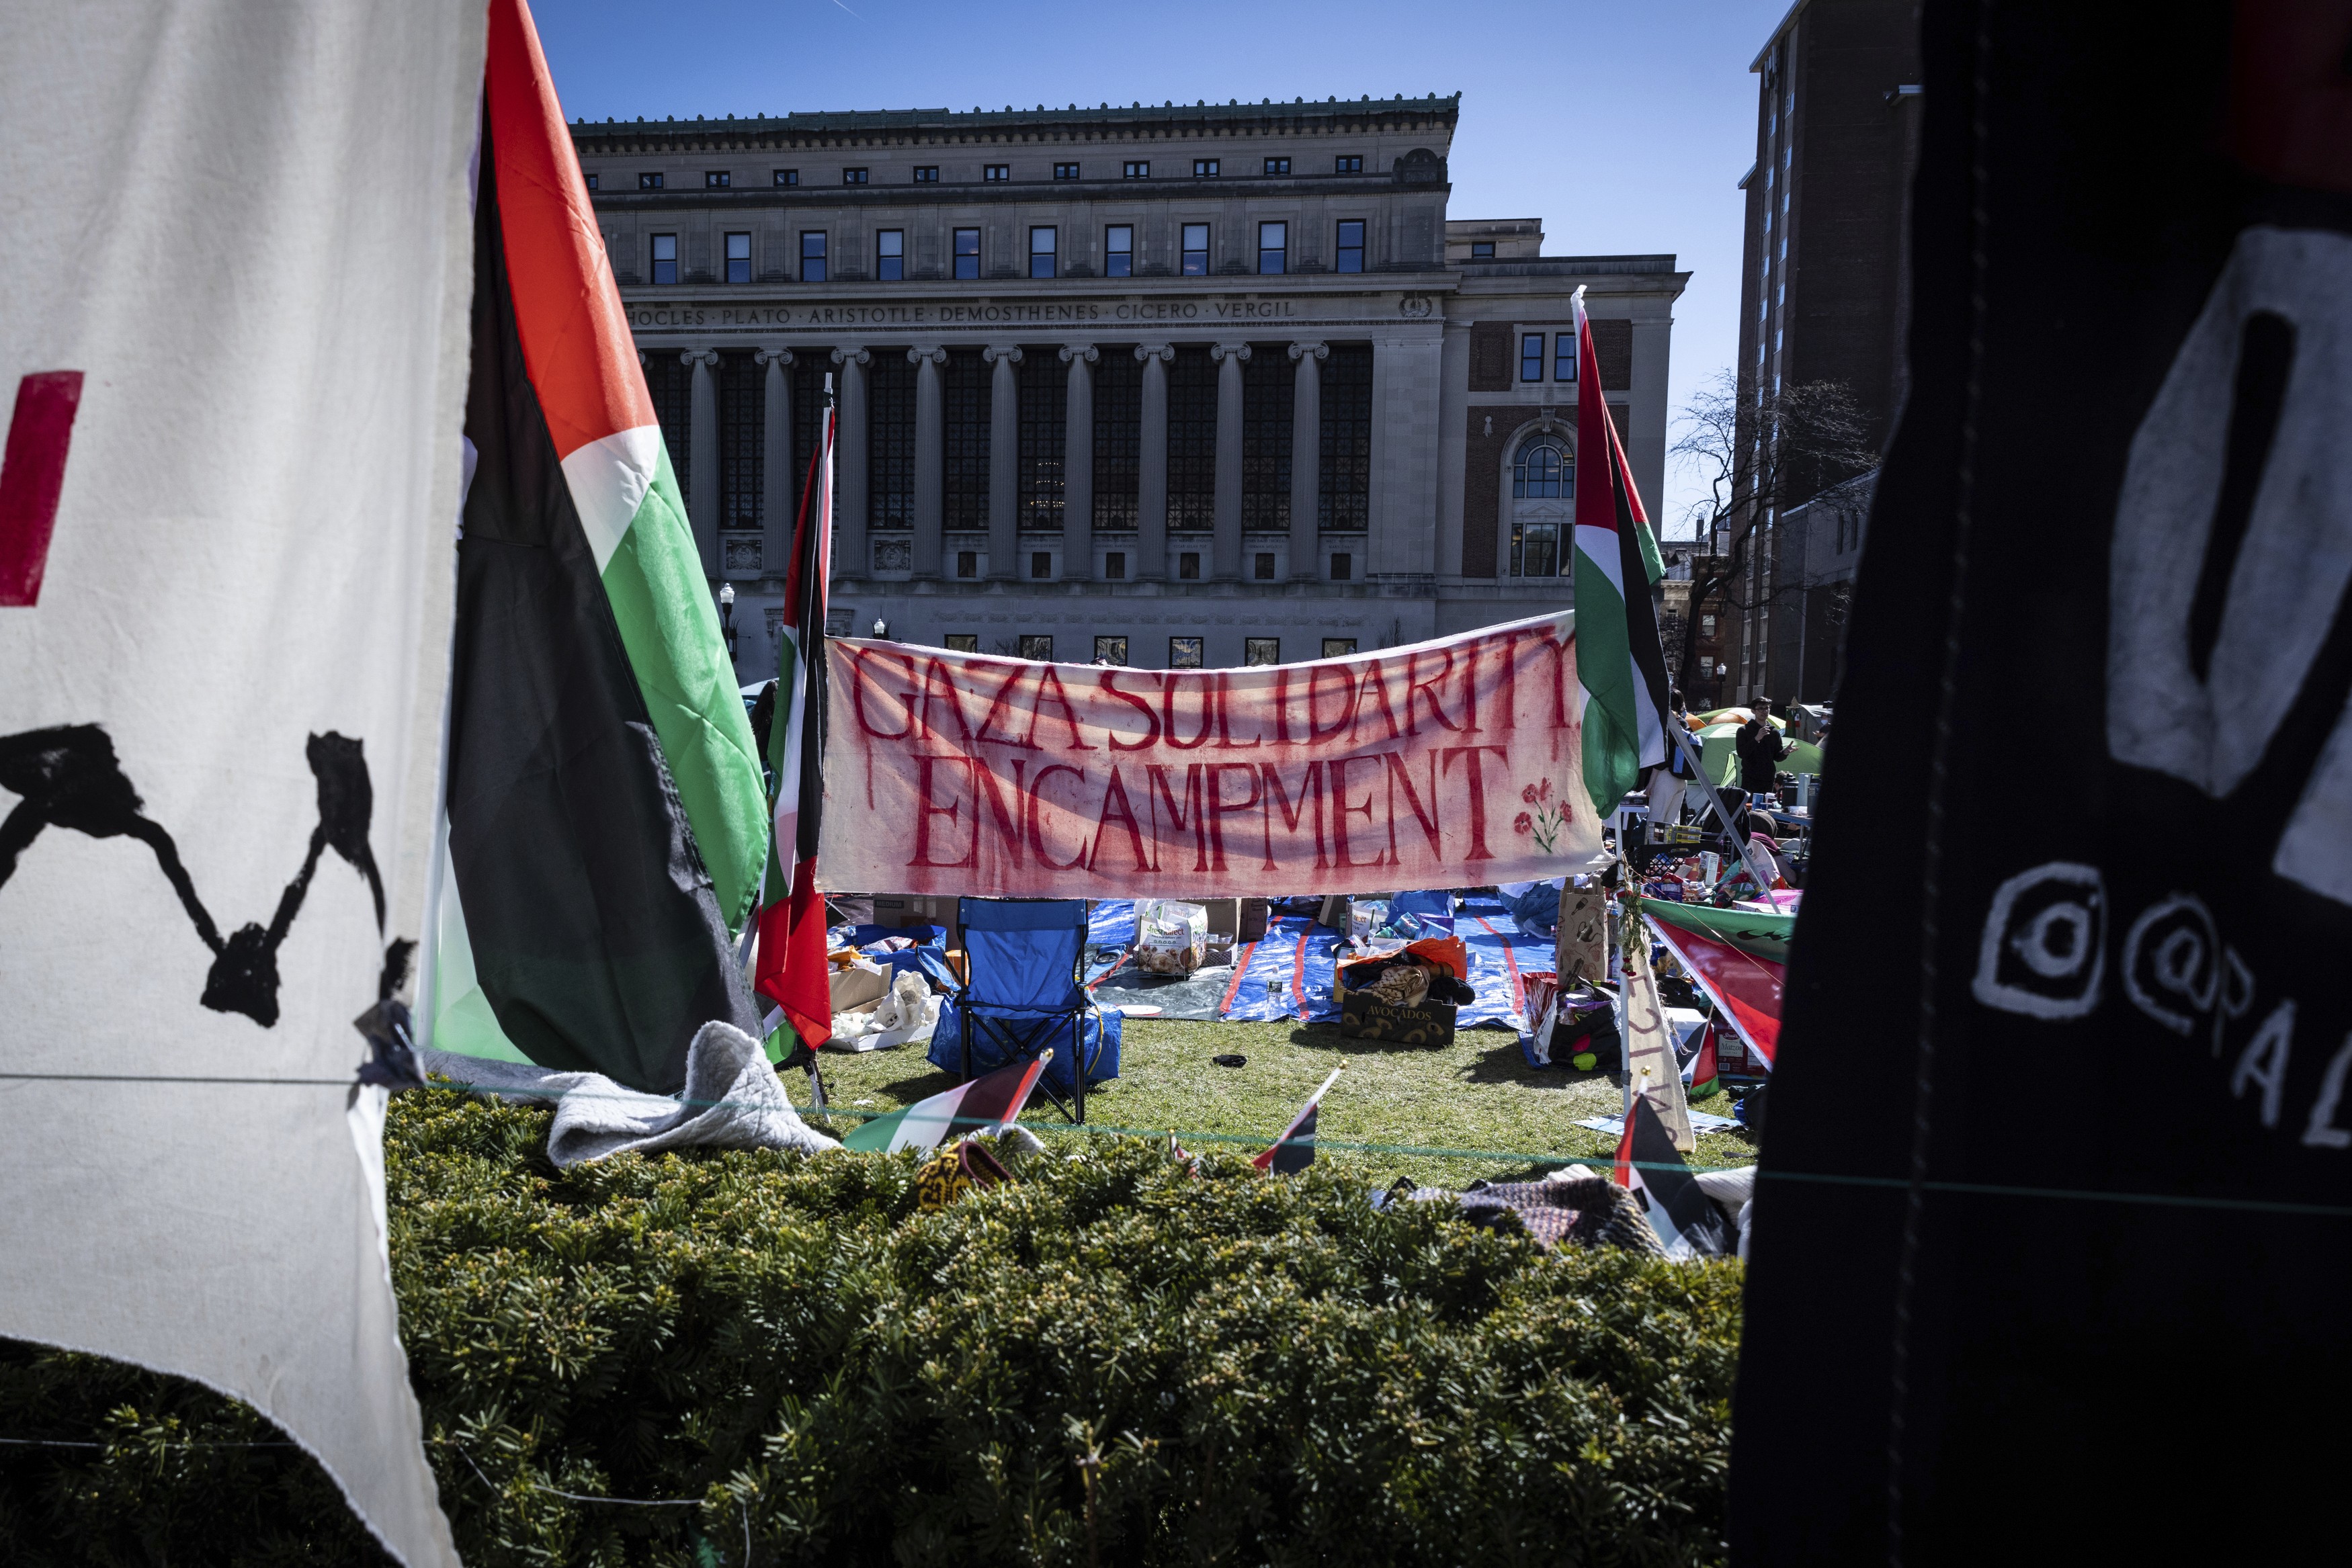 Protestos pró-Palestina se espalham pelas universidades americanas e viram tema eleitoral para Biden e Trump